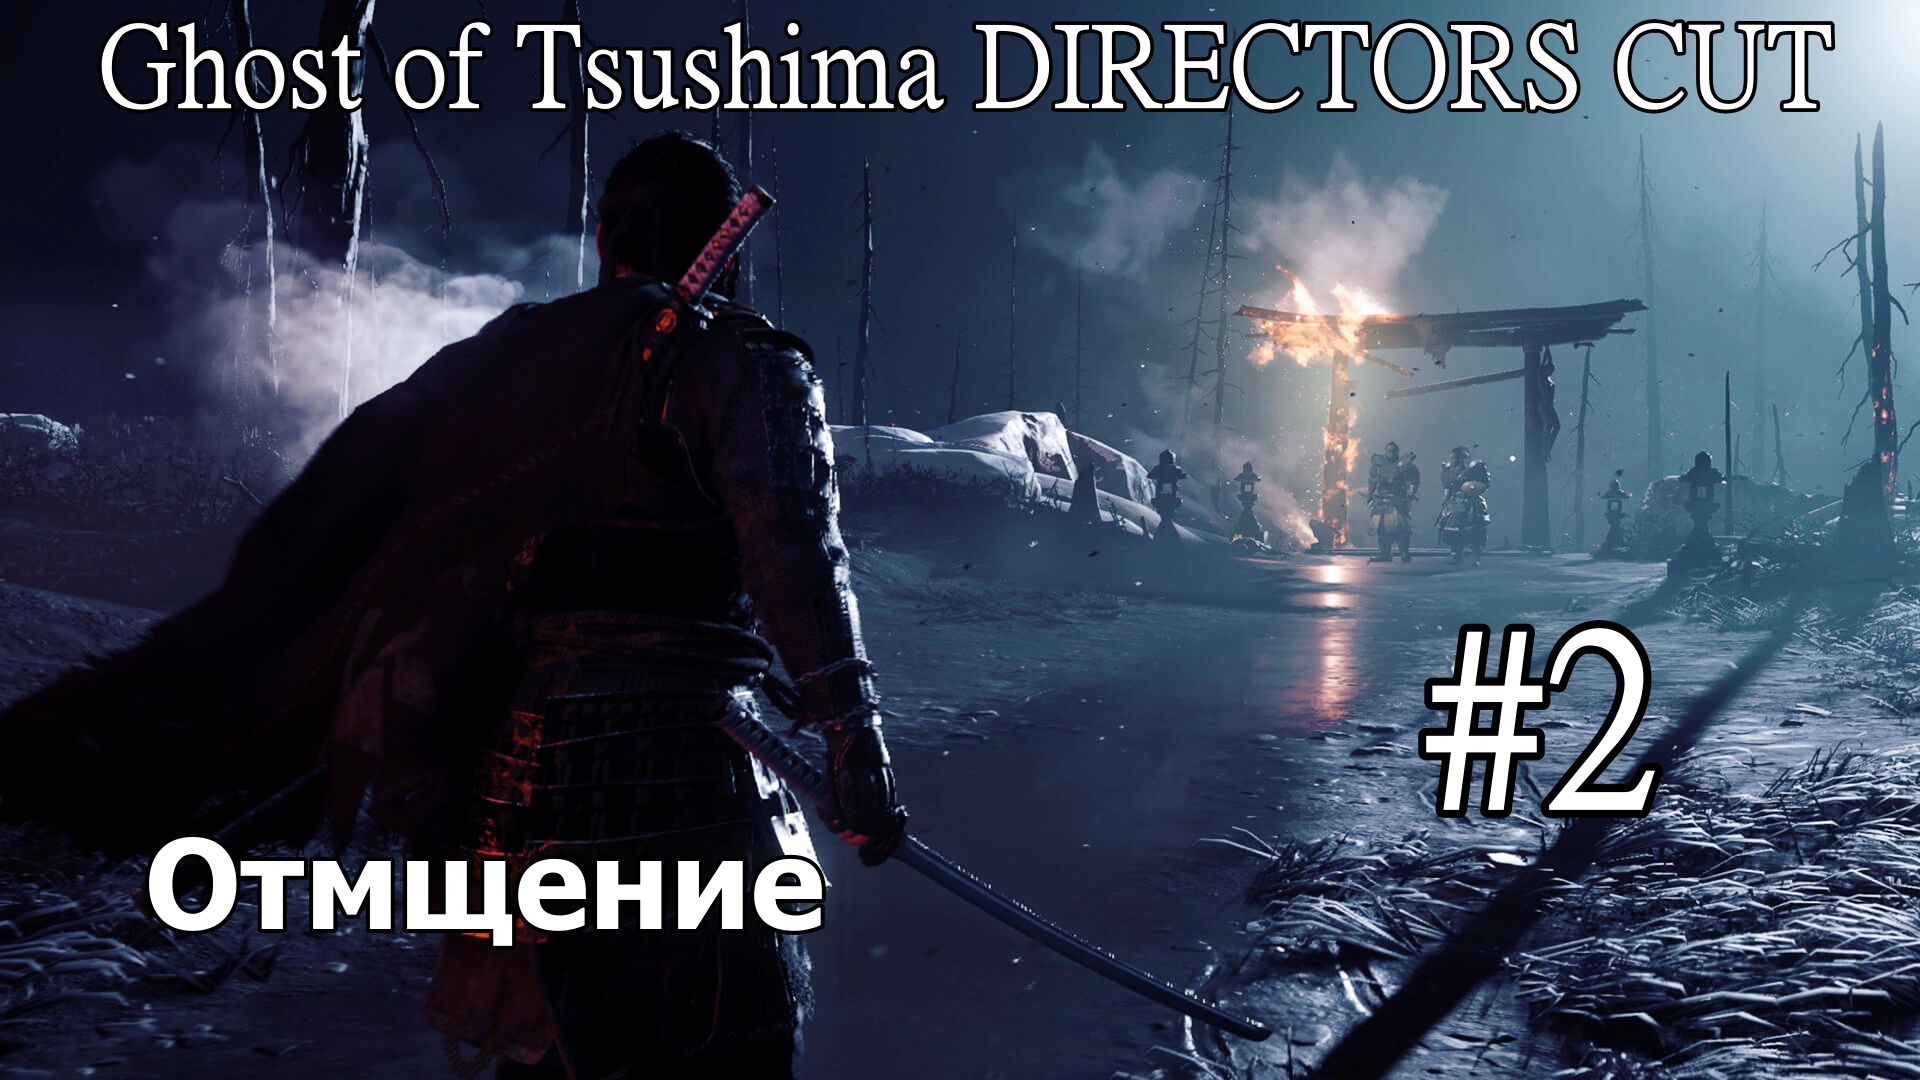 Ghost of Tsushima DIRECTORS CUT "Отмщение" (Без комментарий) Прохождение #2